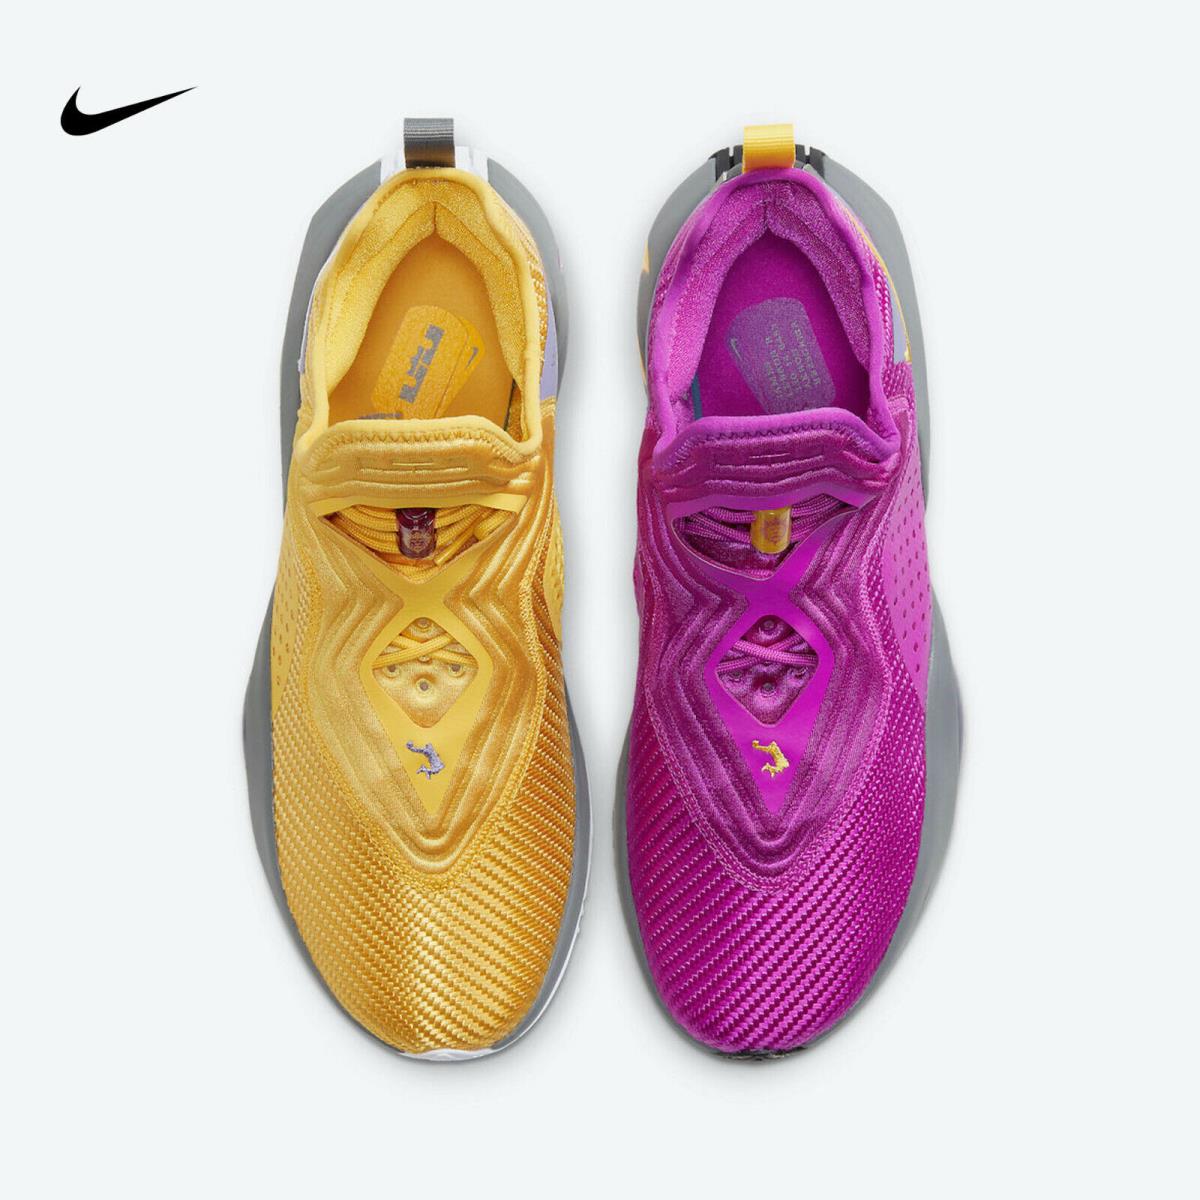 Nike shoes LeBron Soldier XIV - Yellow / Purple 2